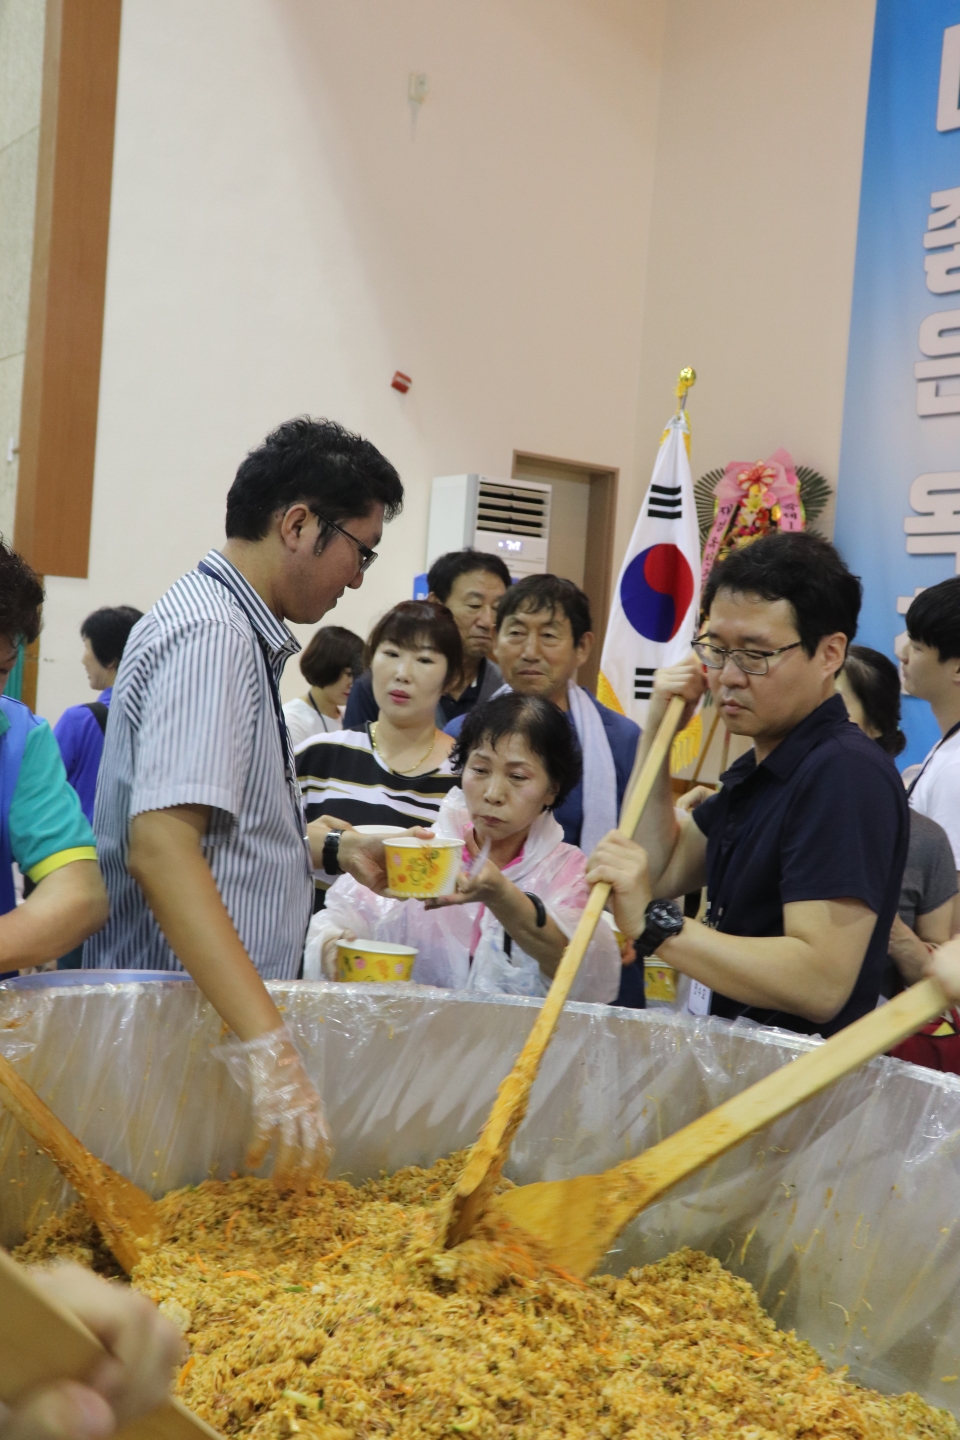 퍼포먼스가 끝나고 이날 행사에 참여한 방문객들이 다함께 비빔밥을 나눠 먹었다. 총 500인분이다.